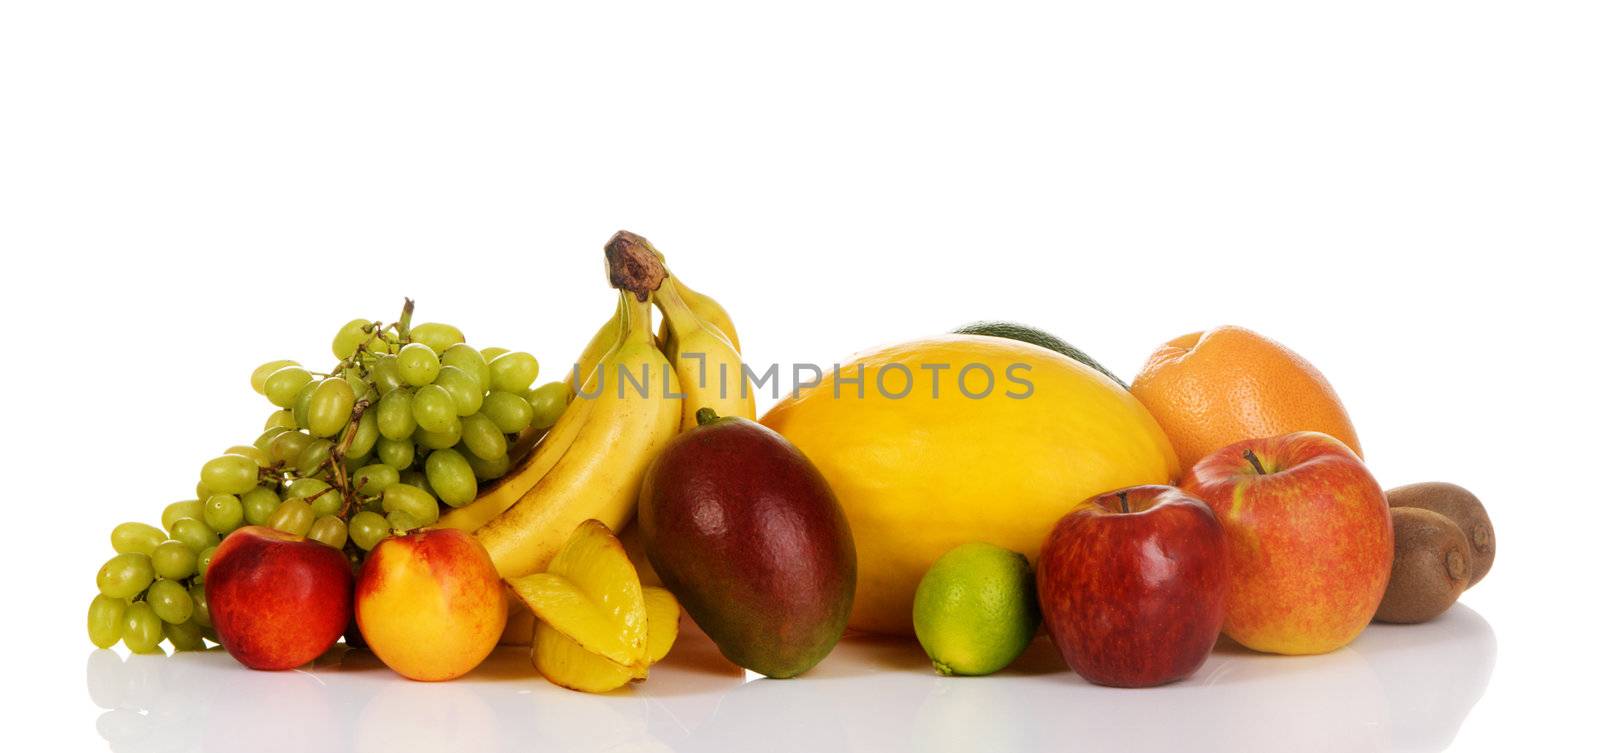 Plenty of fresh fruits by Gdolgikh